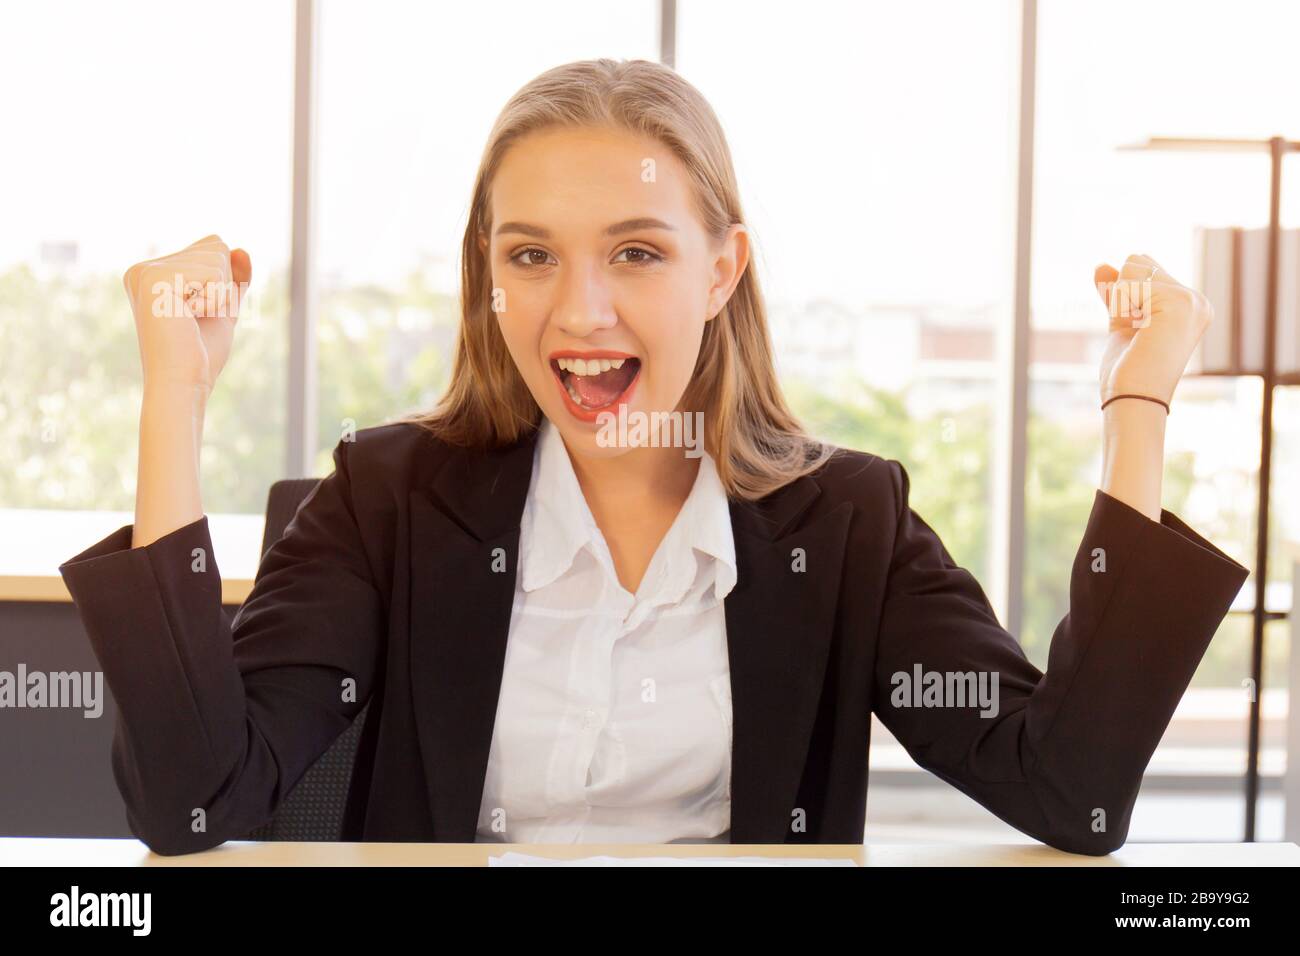 Une belle femme d'affaires en costume, bien habillée, assise au bureau, très heureuse, a levé la main avec un sourire vif sur la table Banque D'Images